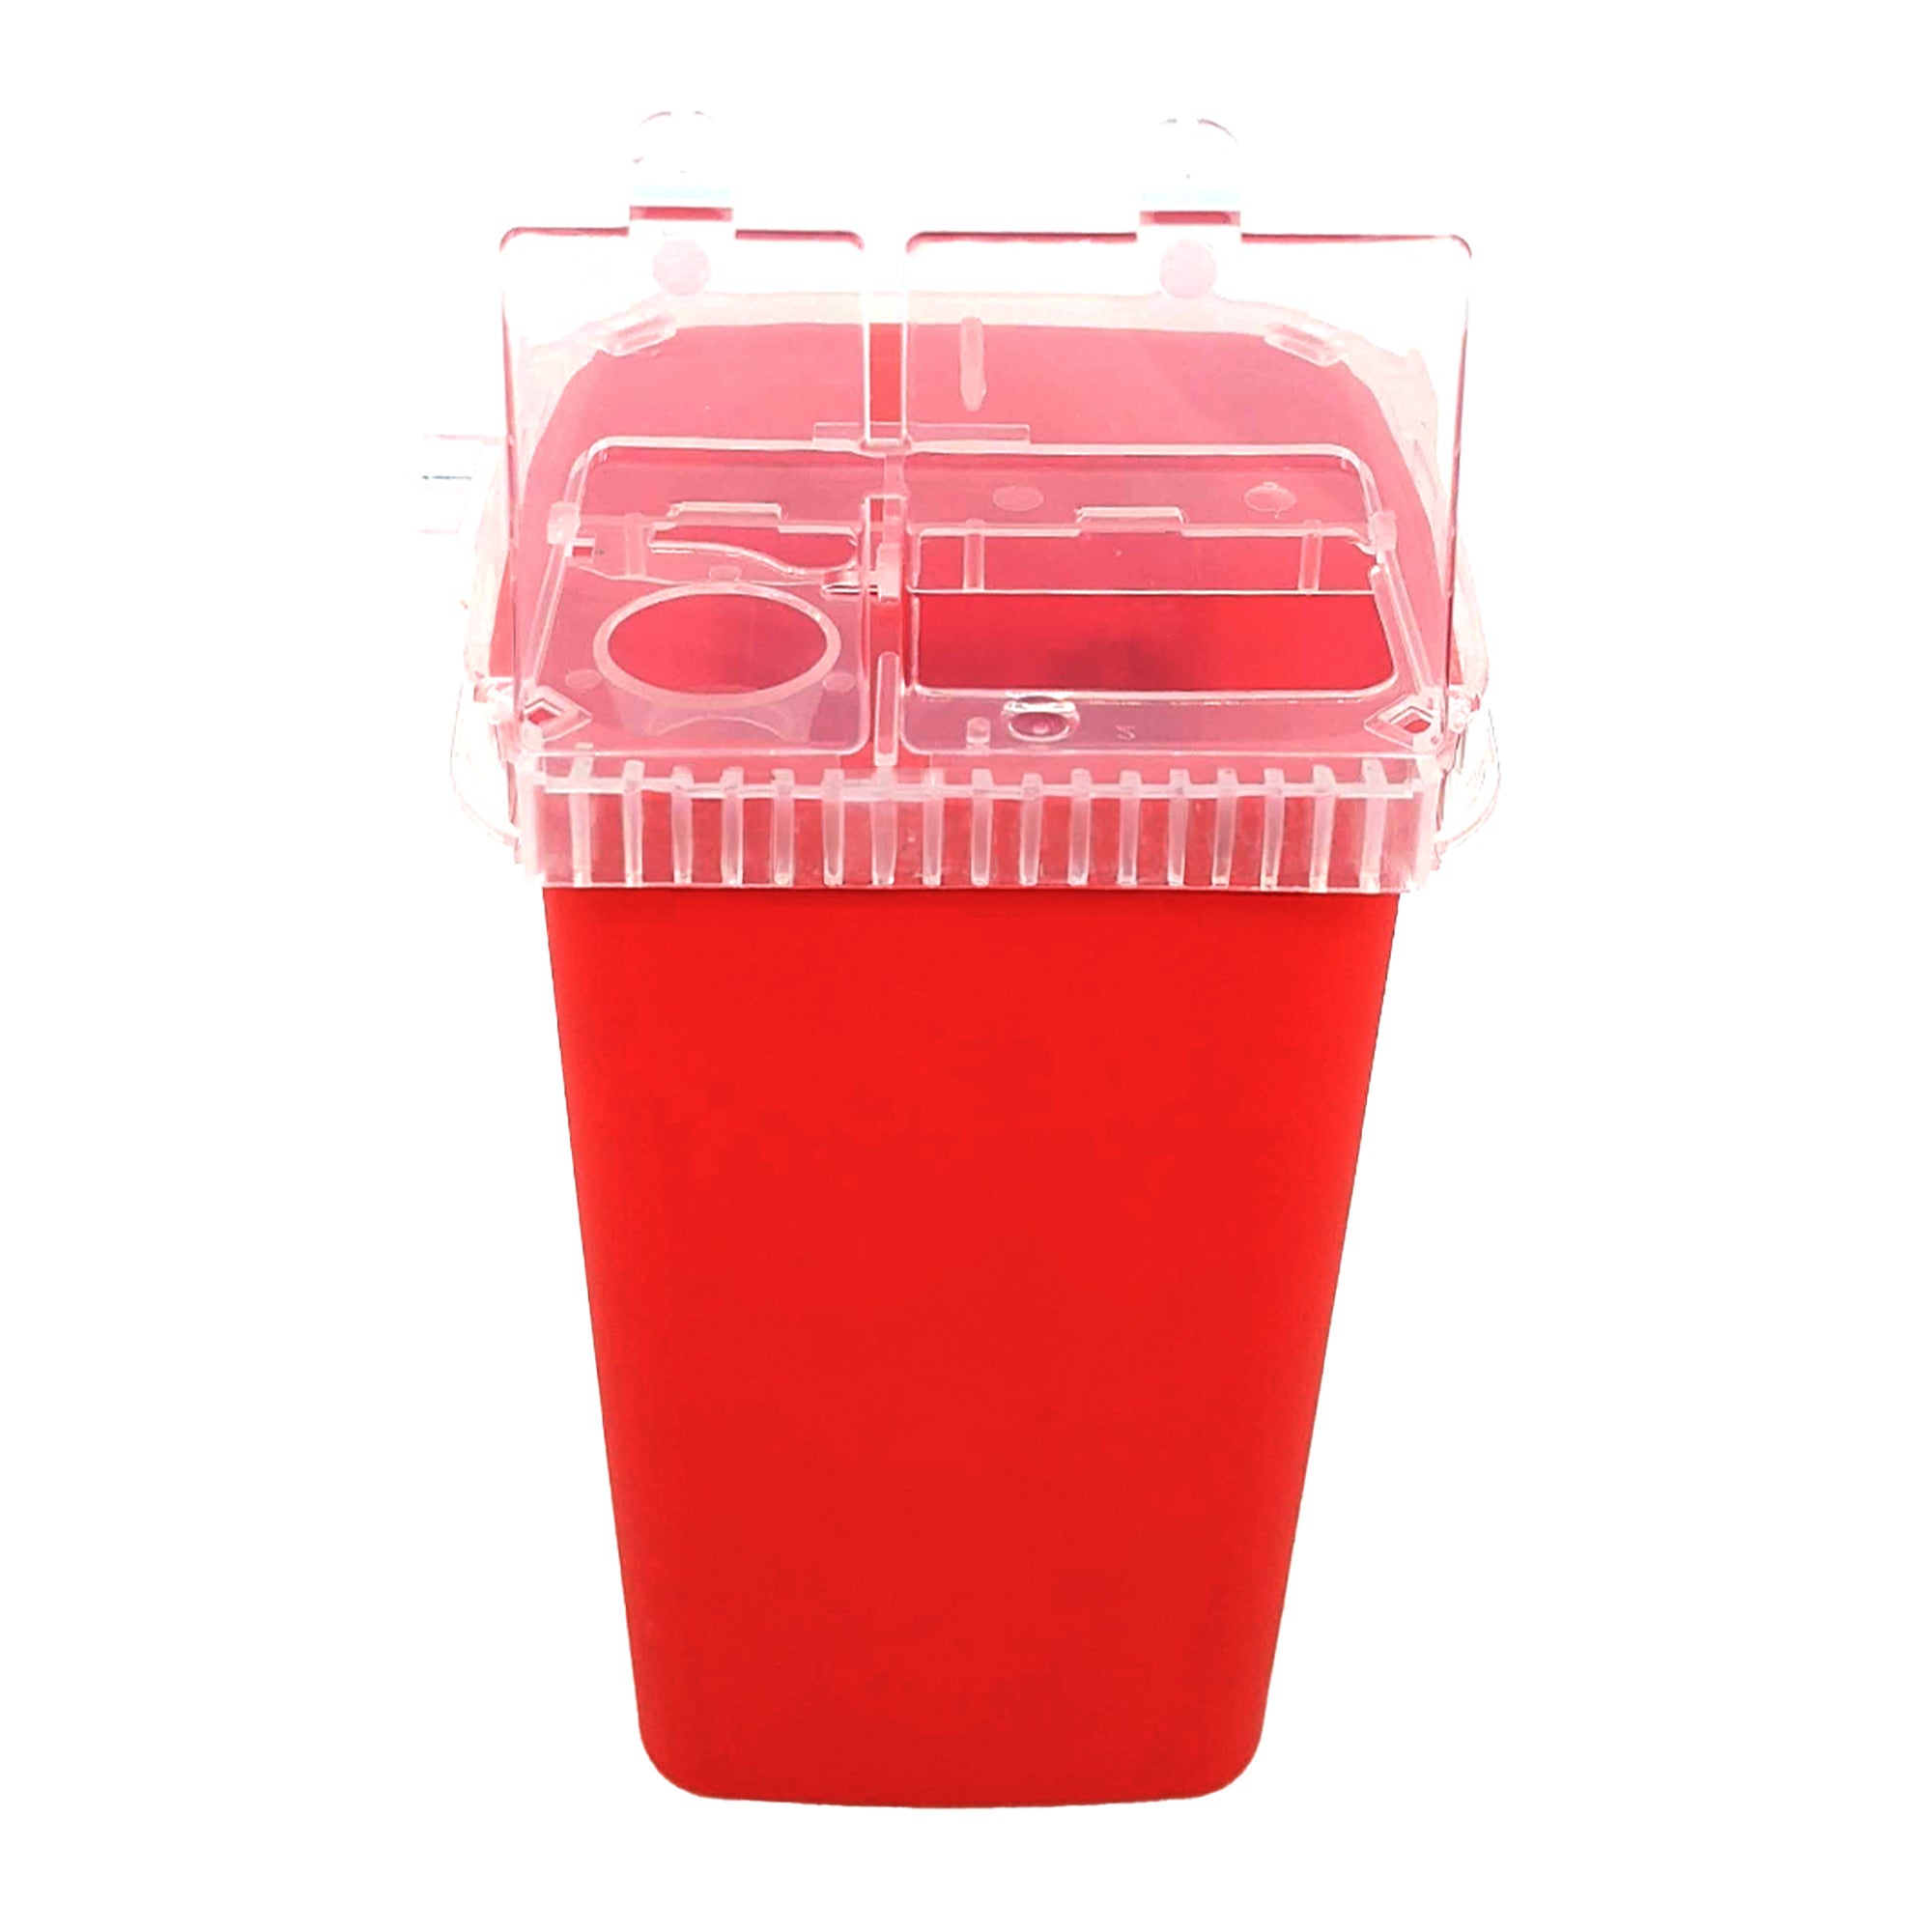 Gabri - Razor Blade Round Disposal Bin Case (Red)